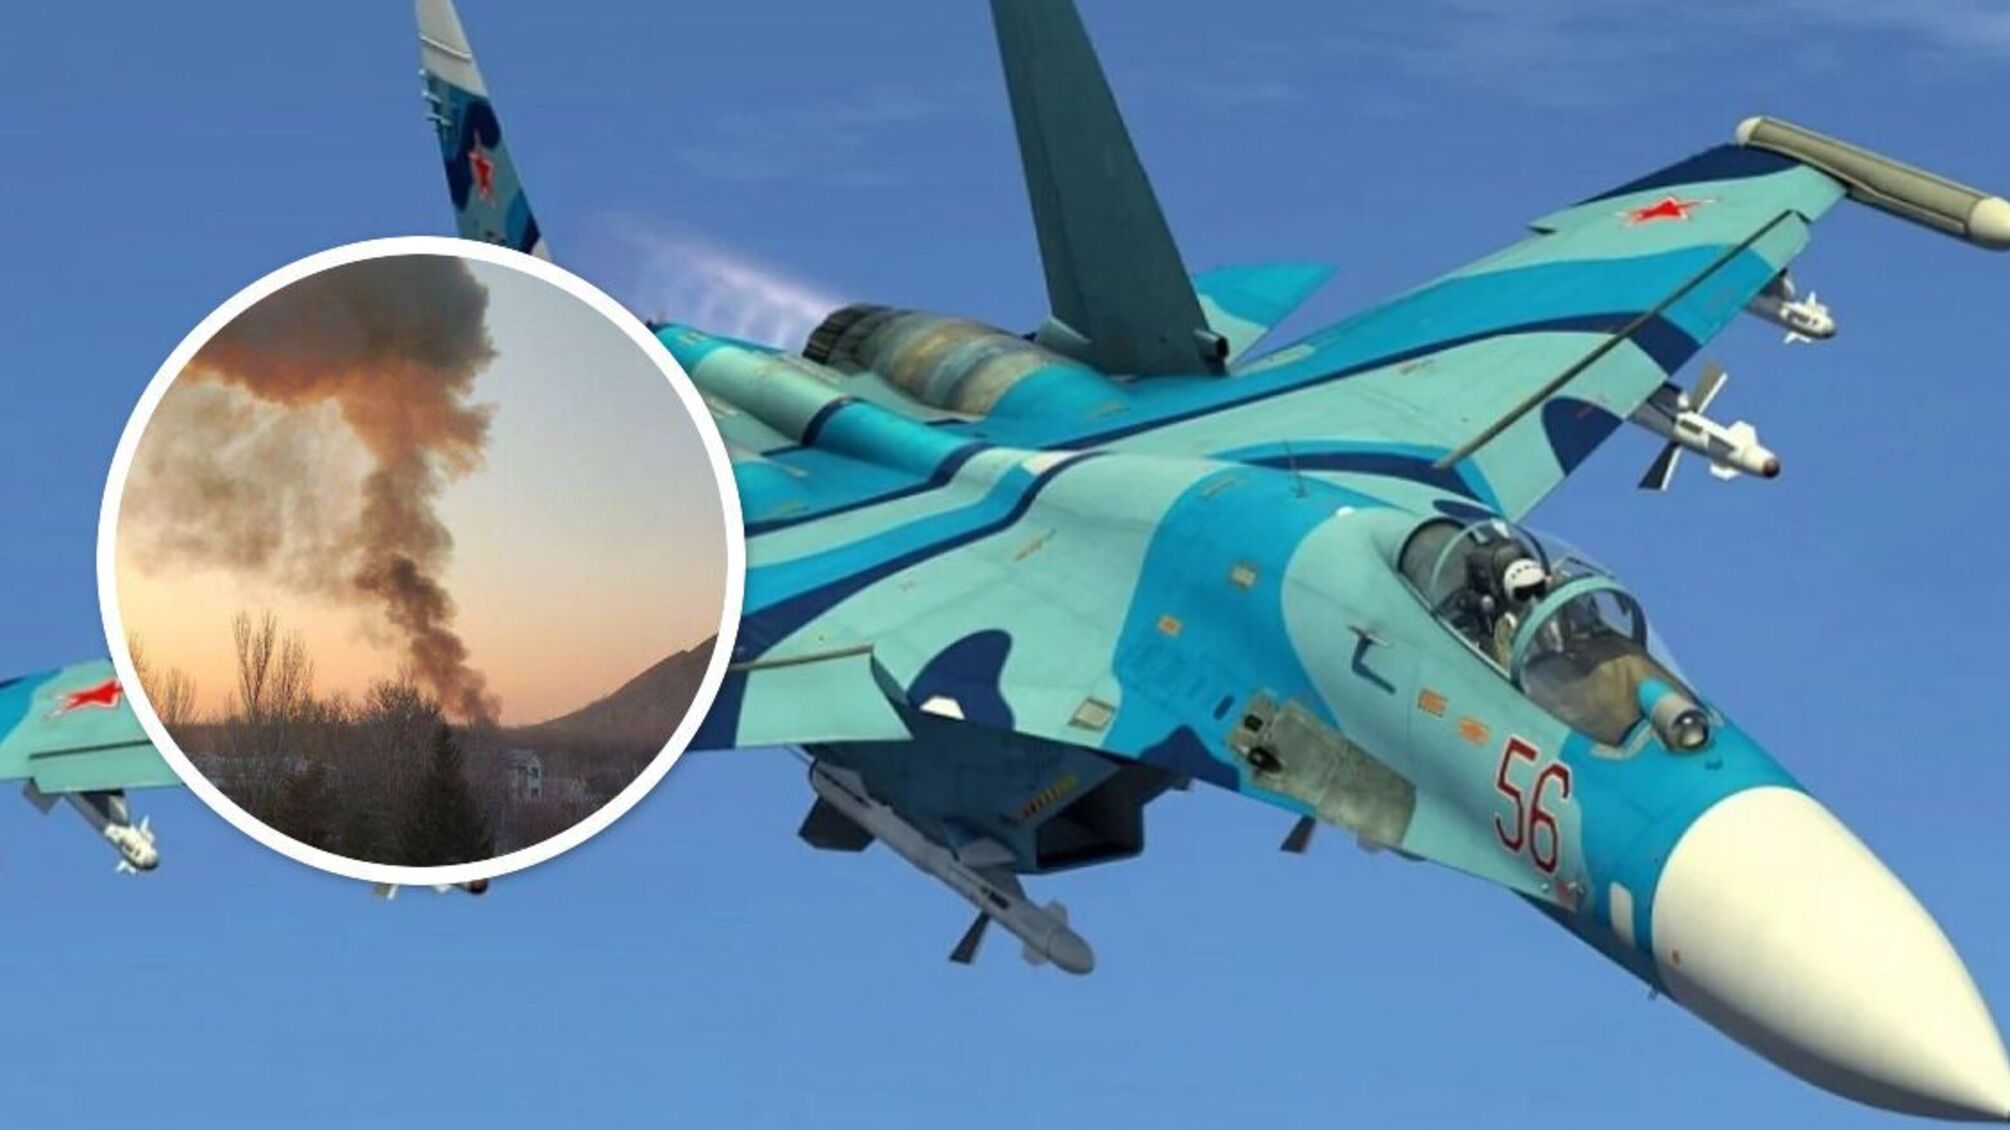 Над Донецком сбит военный самолет - что известно (фото, видео)